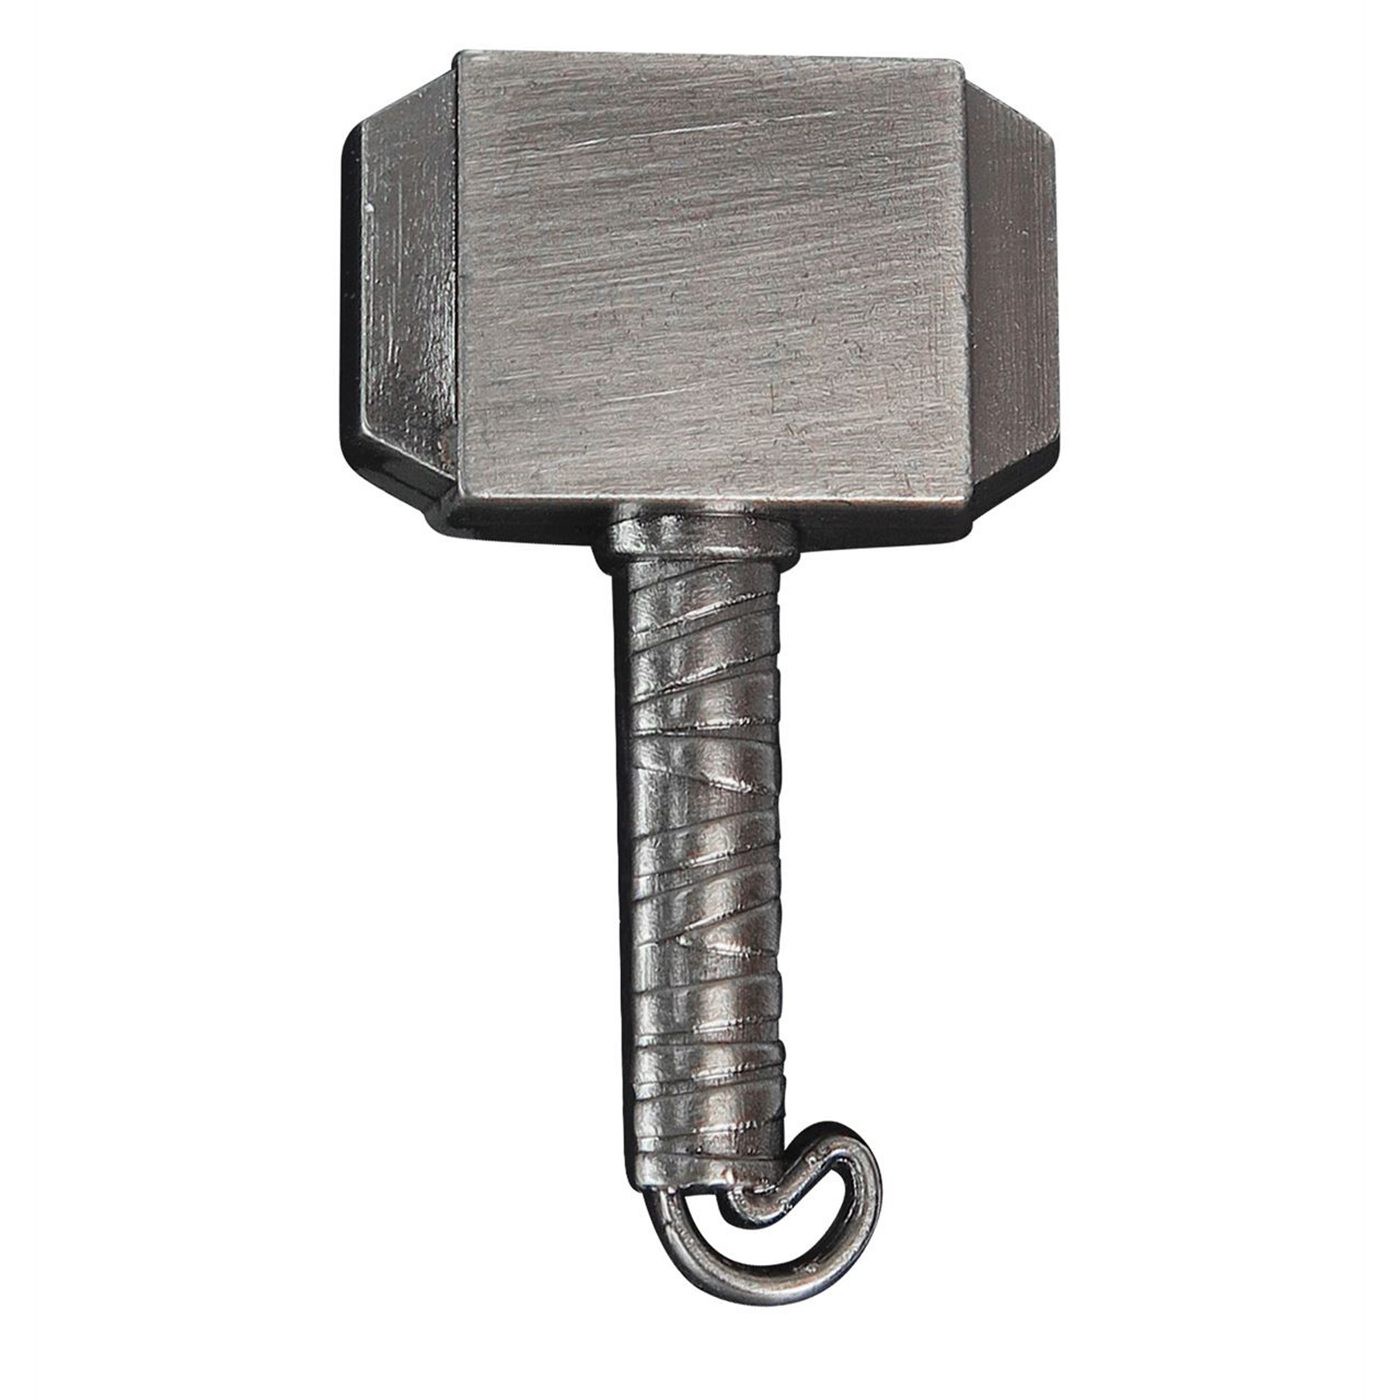 Thor Hammer Pewter Lapel Pin